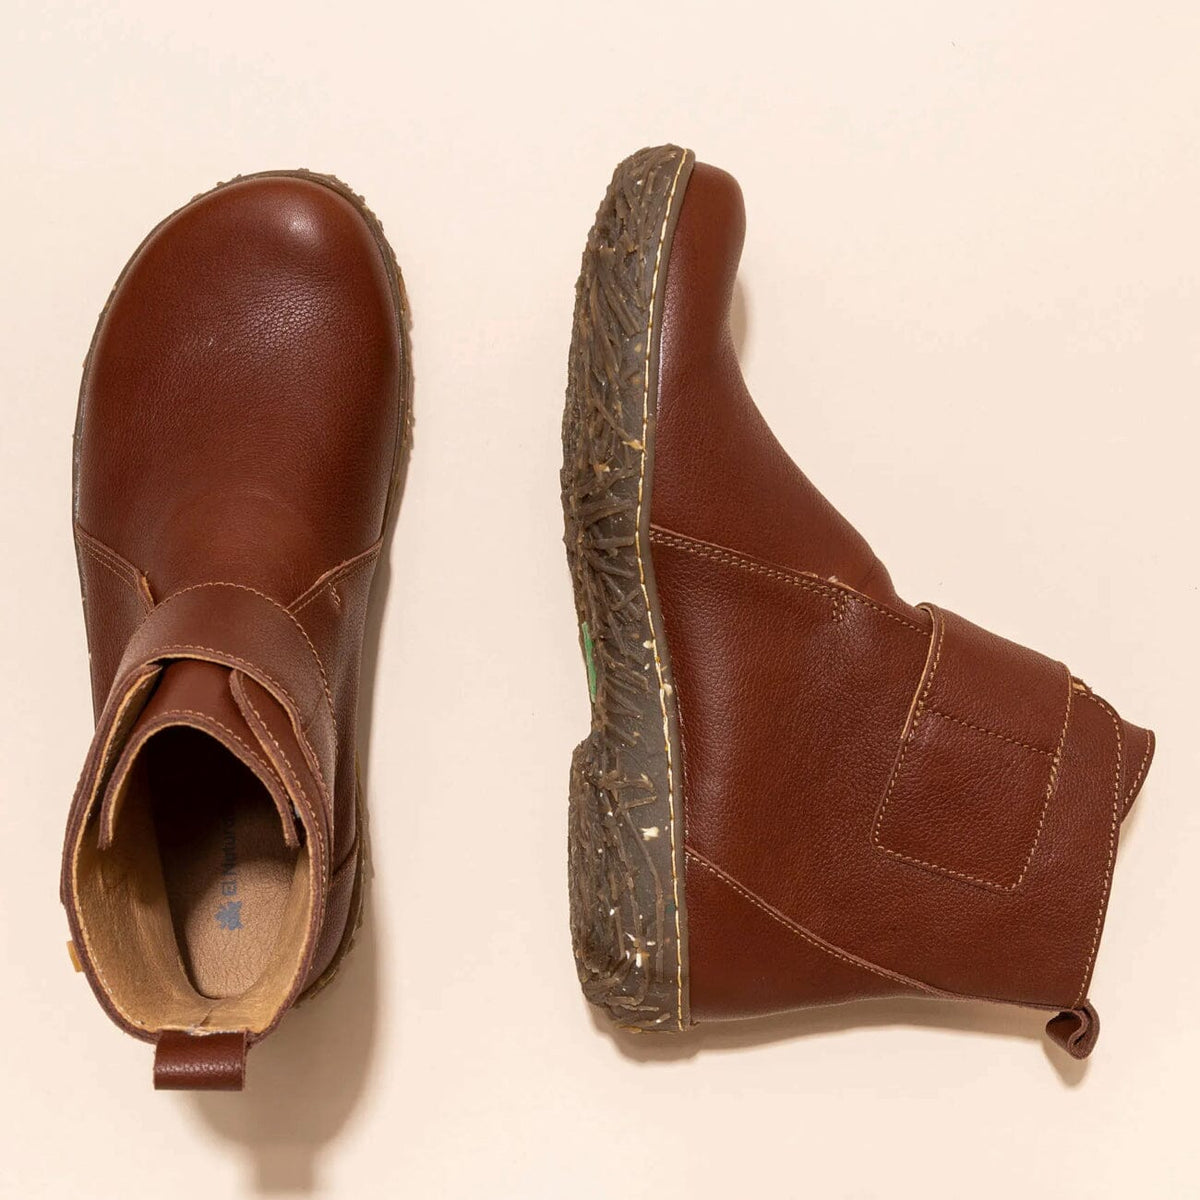 El Naturalista, NIDO ELLA, Boot, Natural Grain Leather, Wood Boots El Natura Lista 